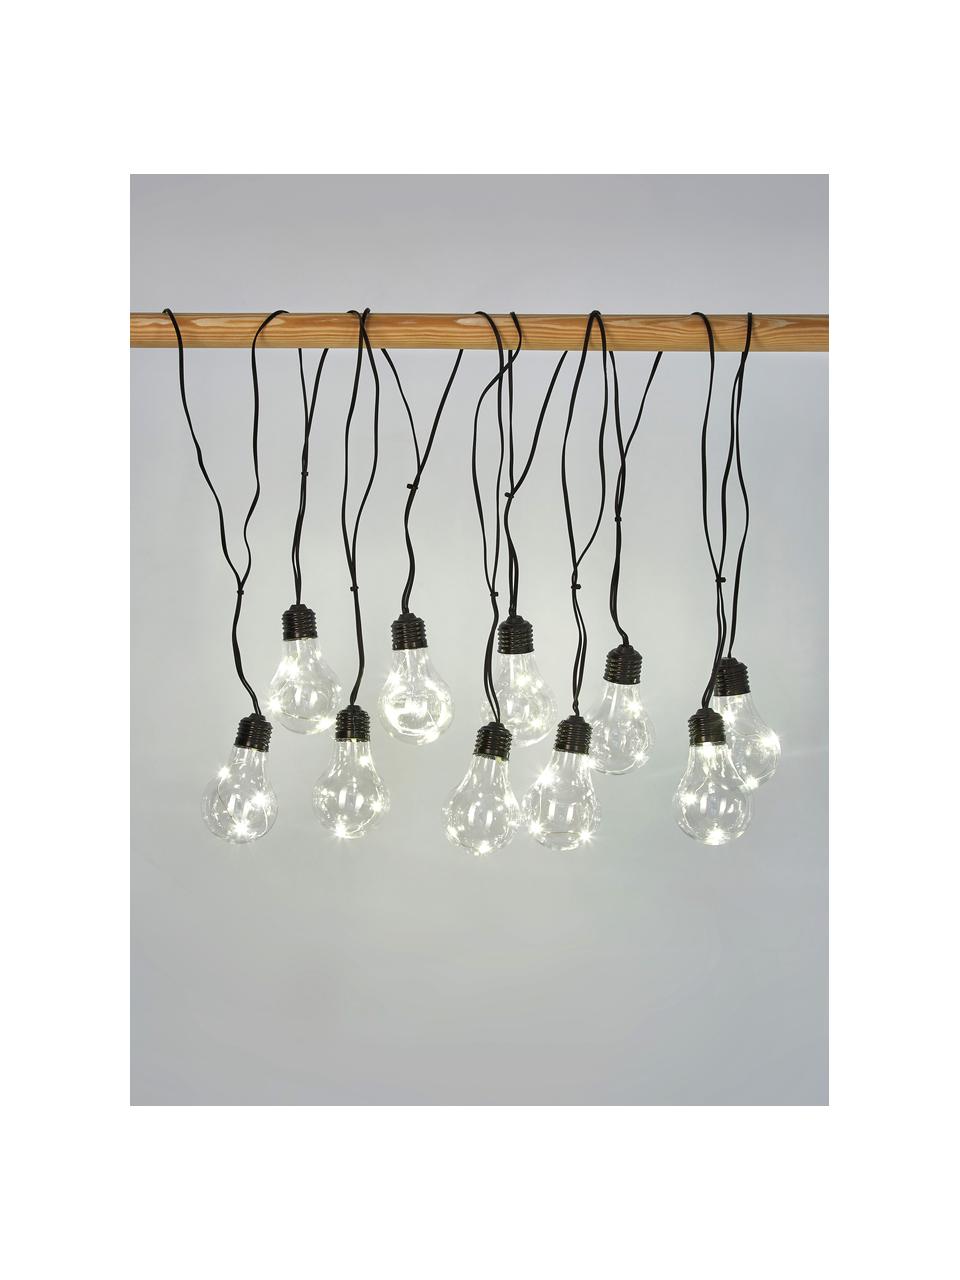 Guirlande lumineuse LED Partytime, 800 cm, 10 lampions, Noir, transparent, long. 800 cm